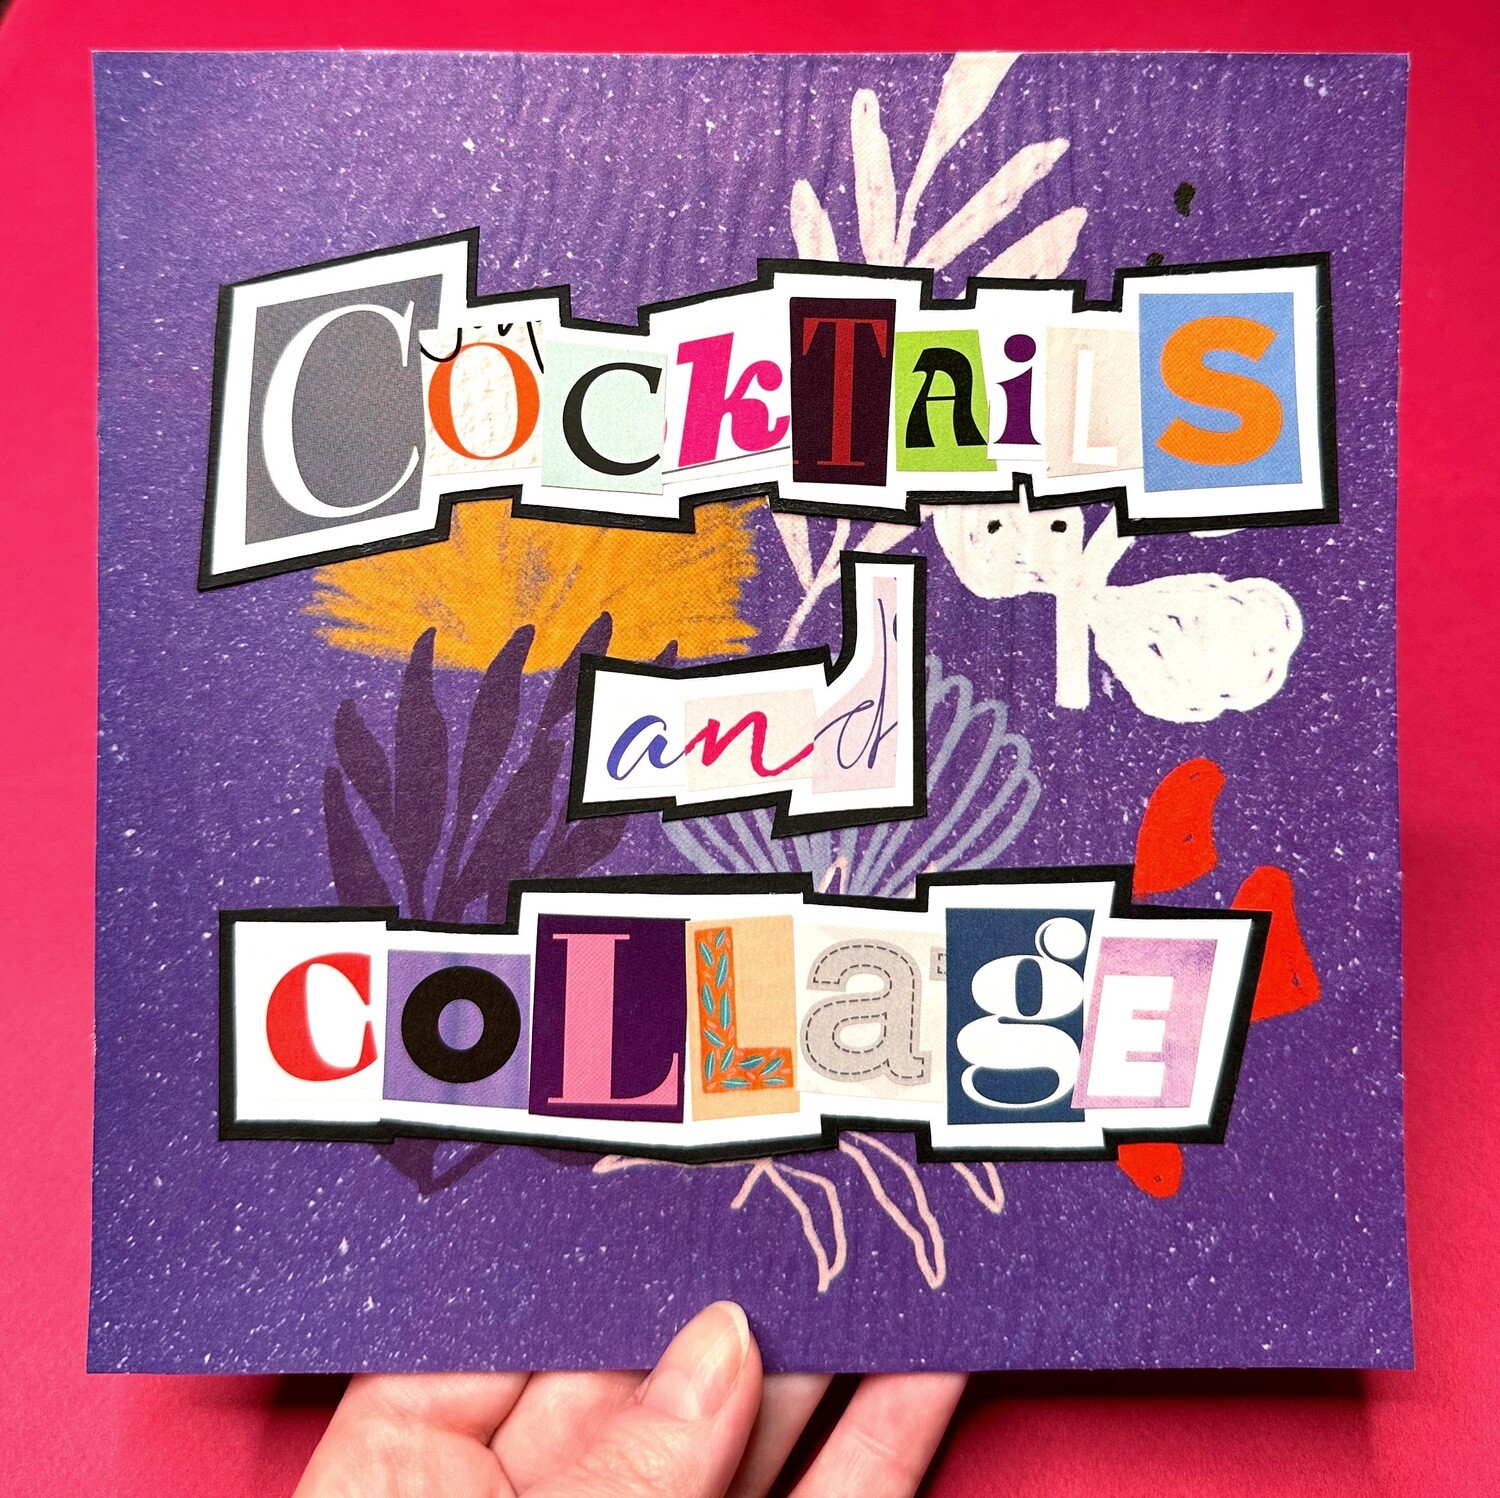 Cocktails + Collage! April 12, 6-8 pm